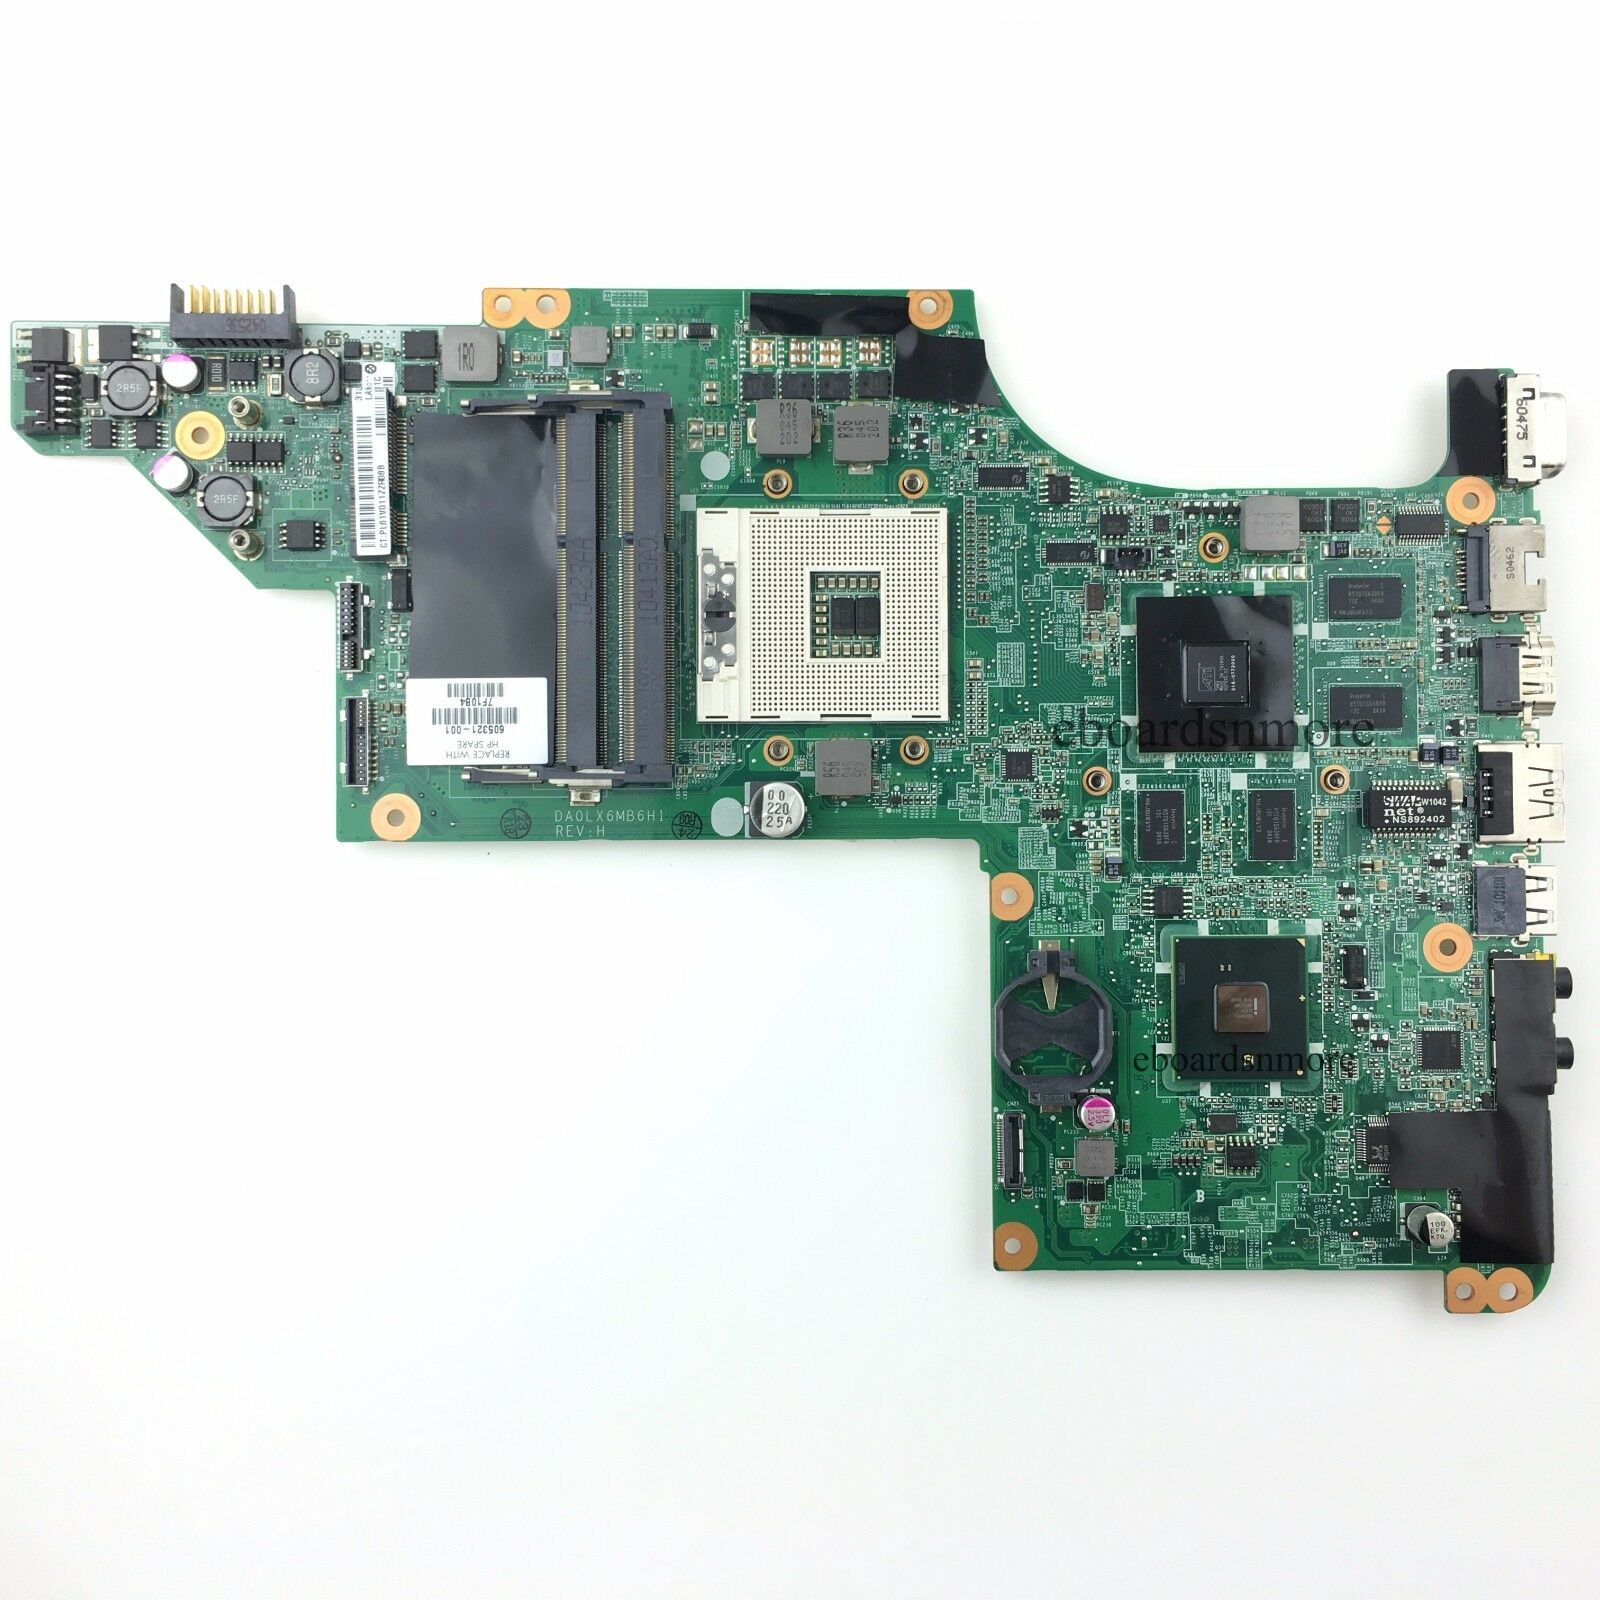 605321-001 for HP DV7 DV7-4000 motherboard,ATI 216-0772000,DA0LX6MB6H1,Grade A Memory Type: See Description